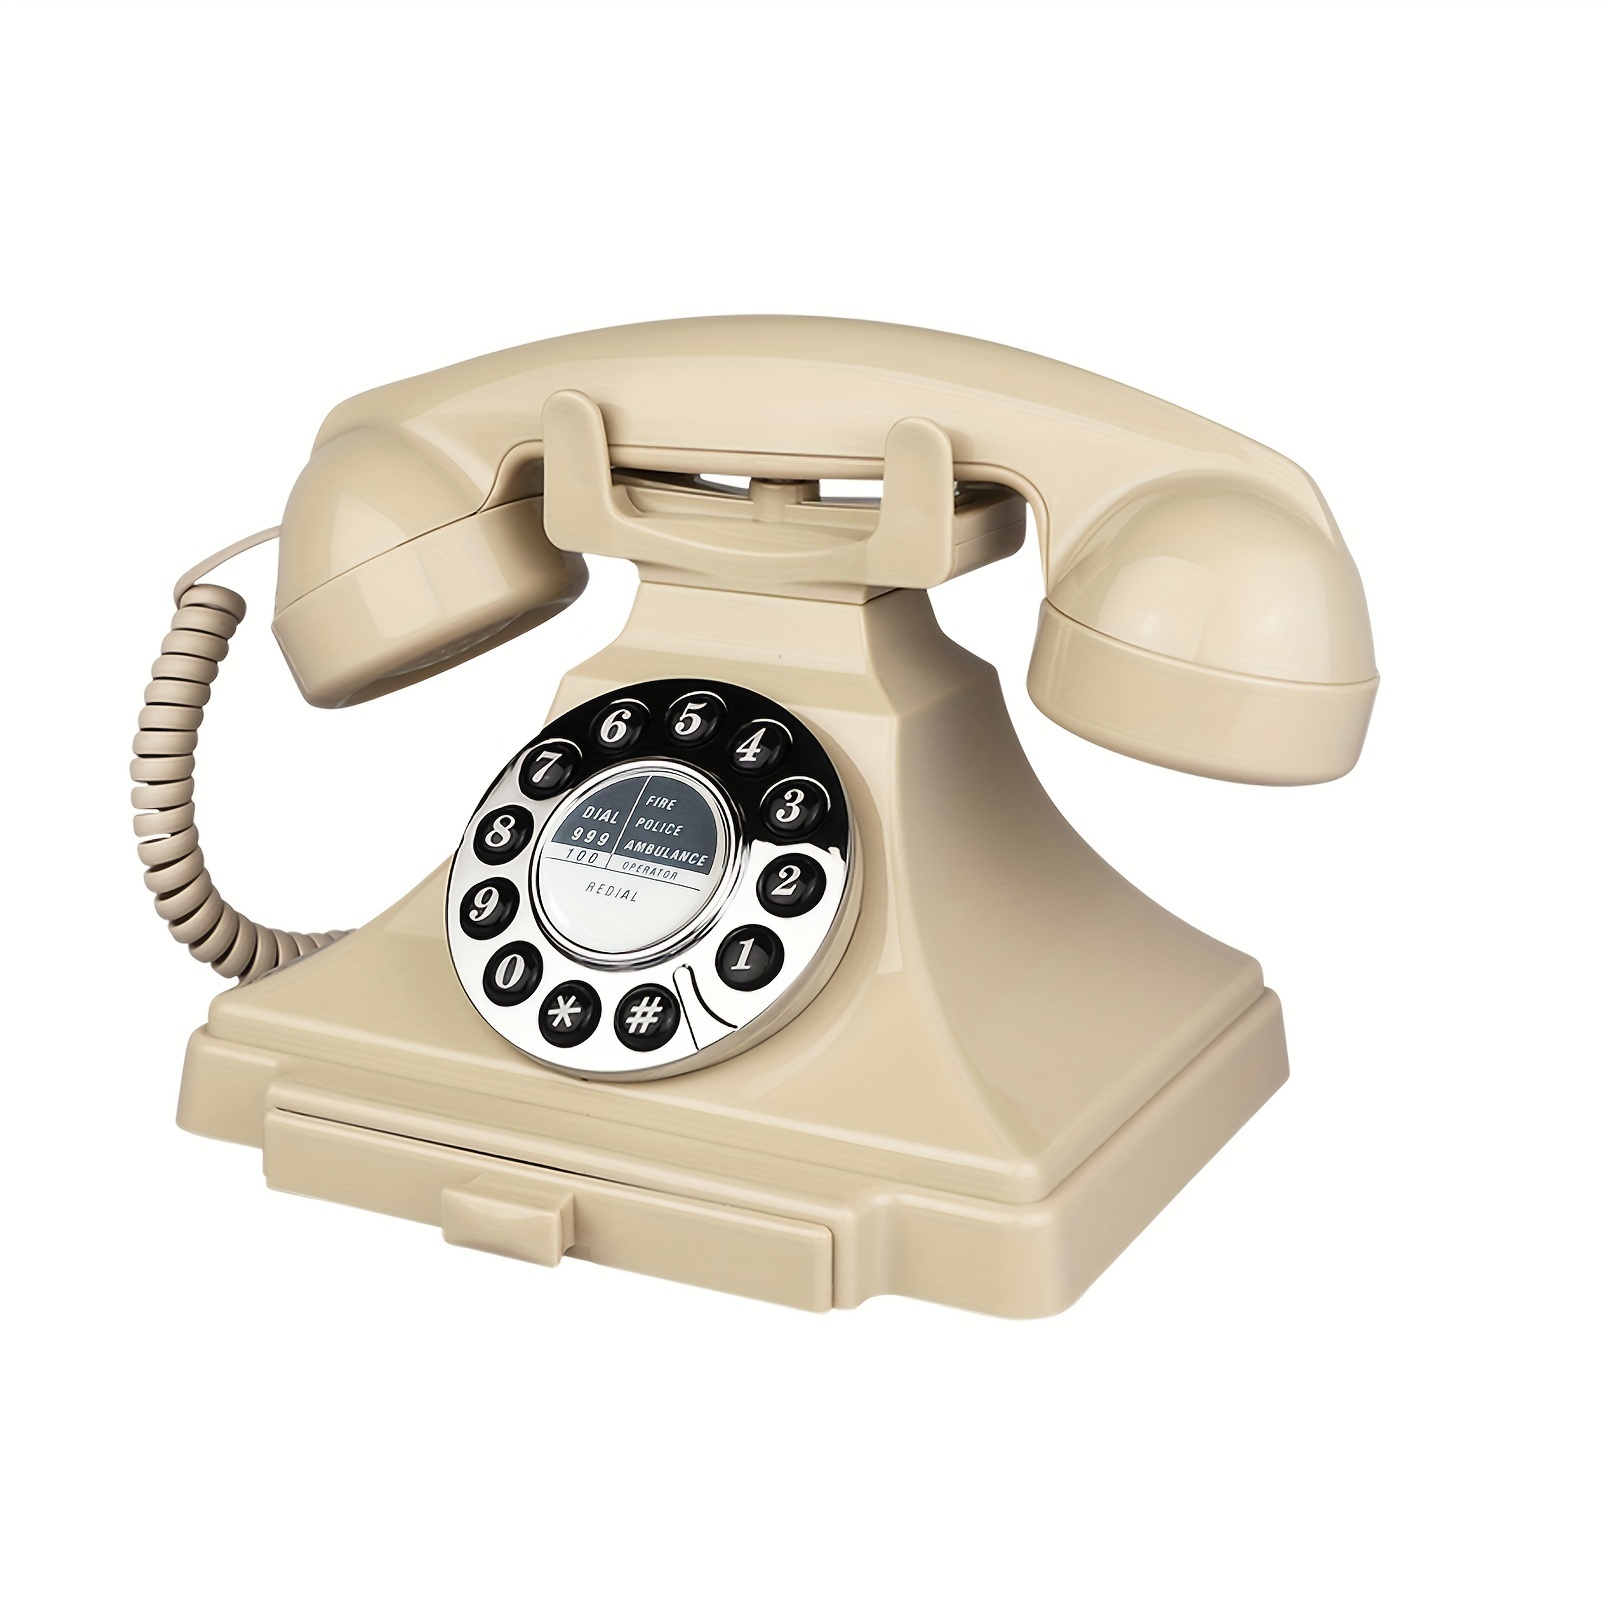 Retro Antique Landline Phones, Retro Corded Phone Telephone